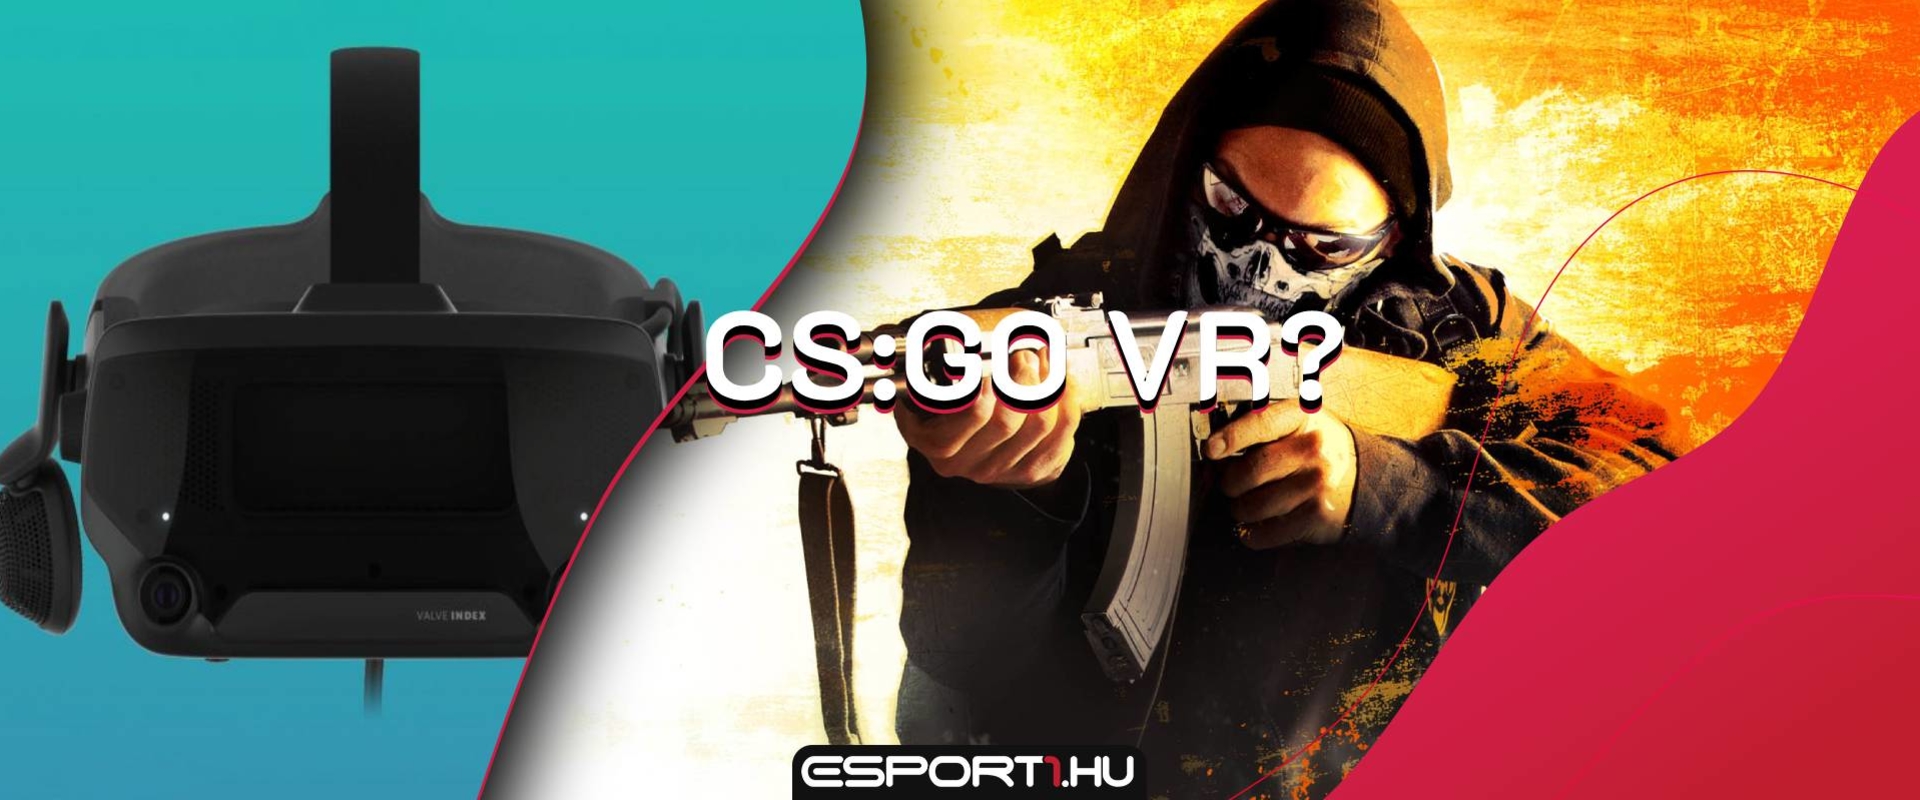 Két nap és jöhet a CS:GO VR változata? - Valve Index